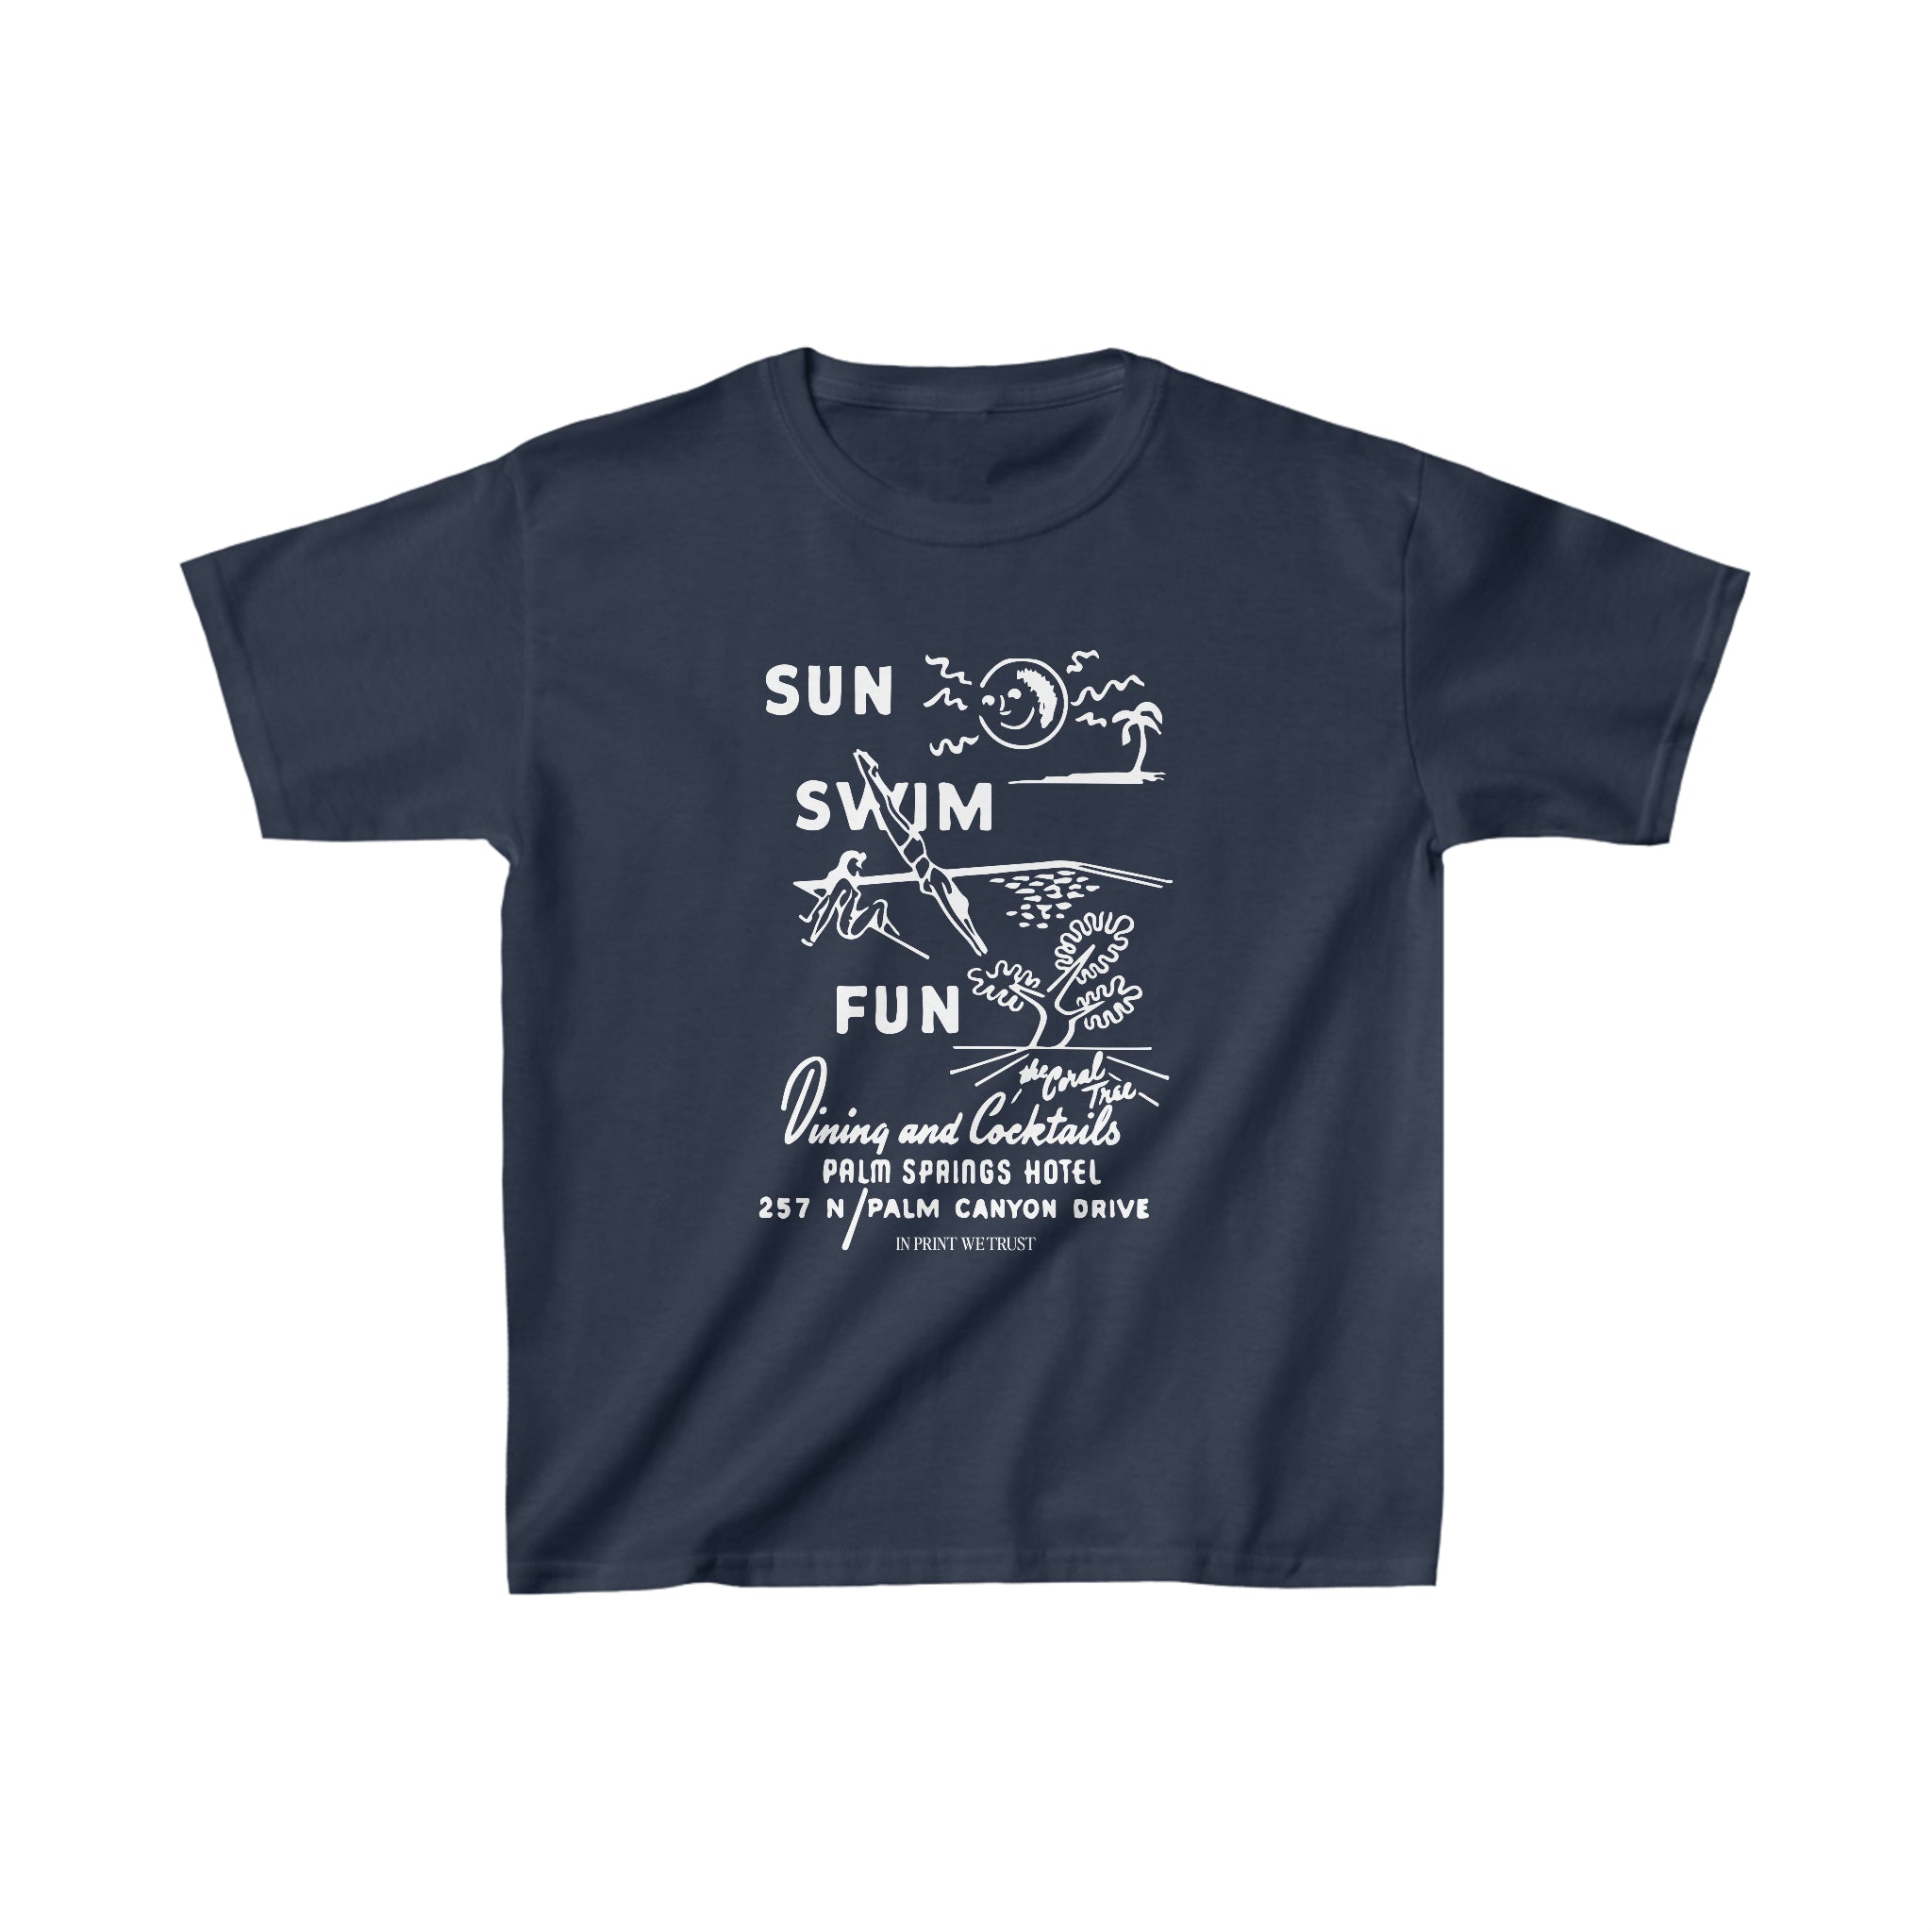 'Sun Swim Fun' baby tee - In Print We Trust